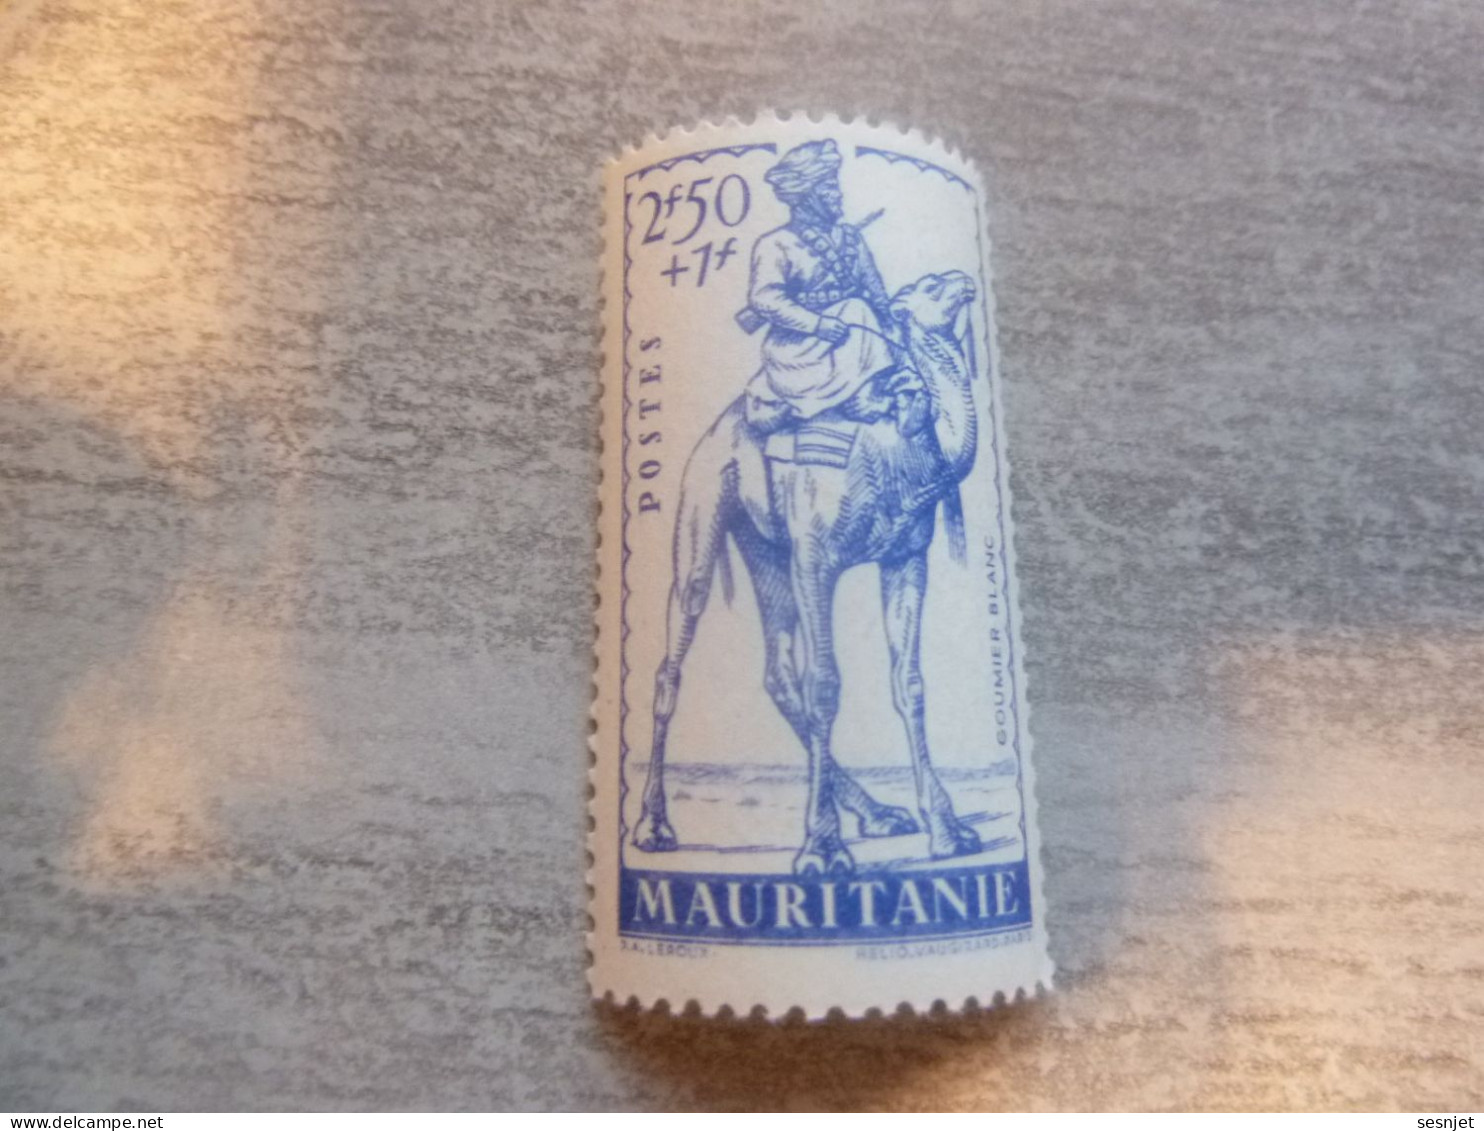 Mauritanie - Défense De L'Empire - Goumier Blanc - 2f.50+1f. - Yt 118 - Bleu - Neuf Sans Trace - Année 1941 - - Ungebraucht